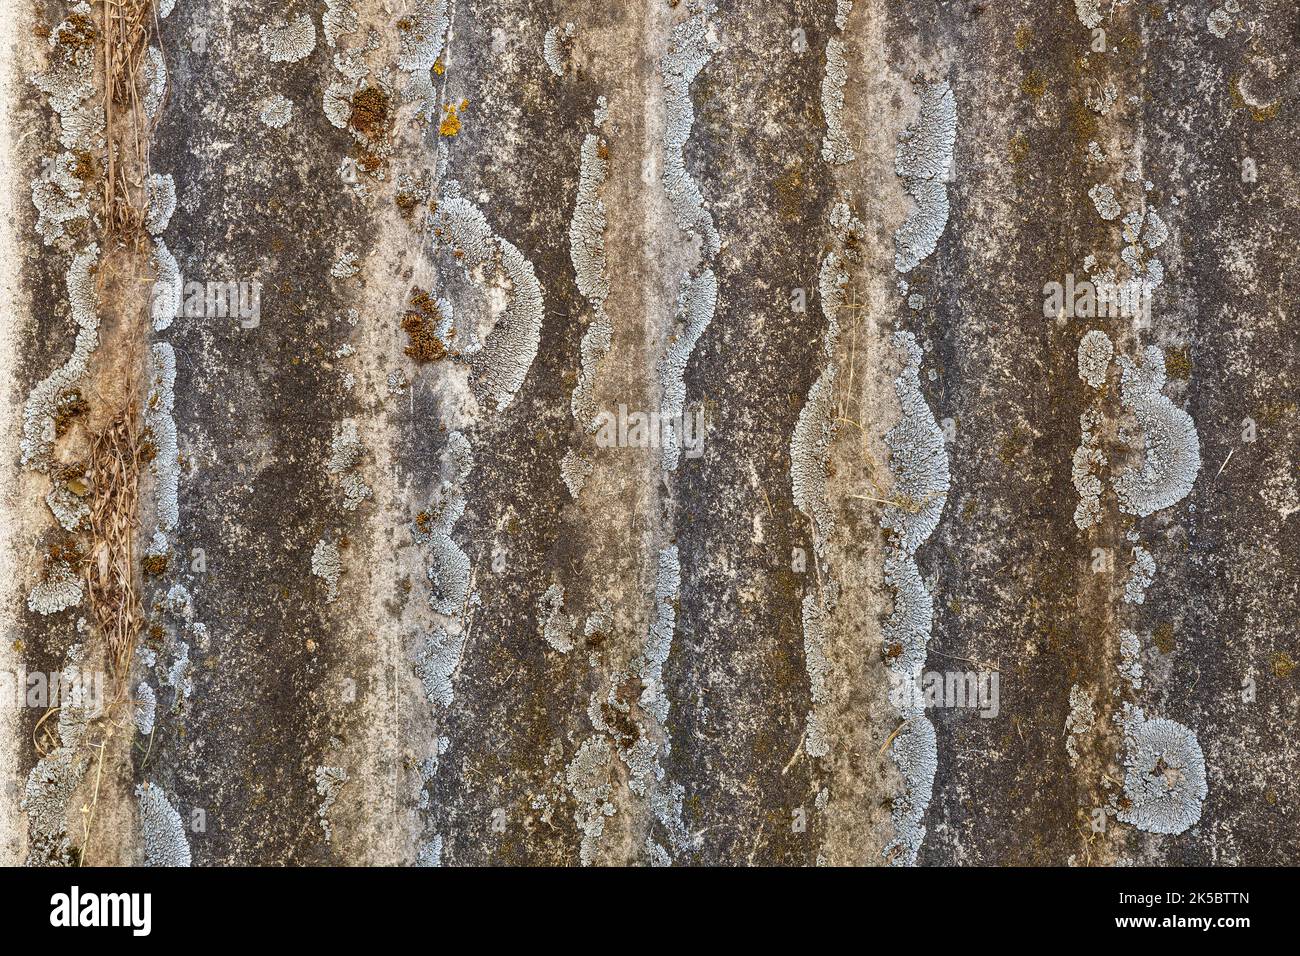 Asbesto immagini e fotografie stock ad alta risoluzione - Alamy